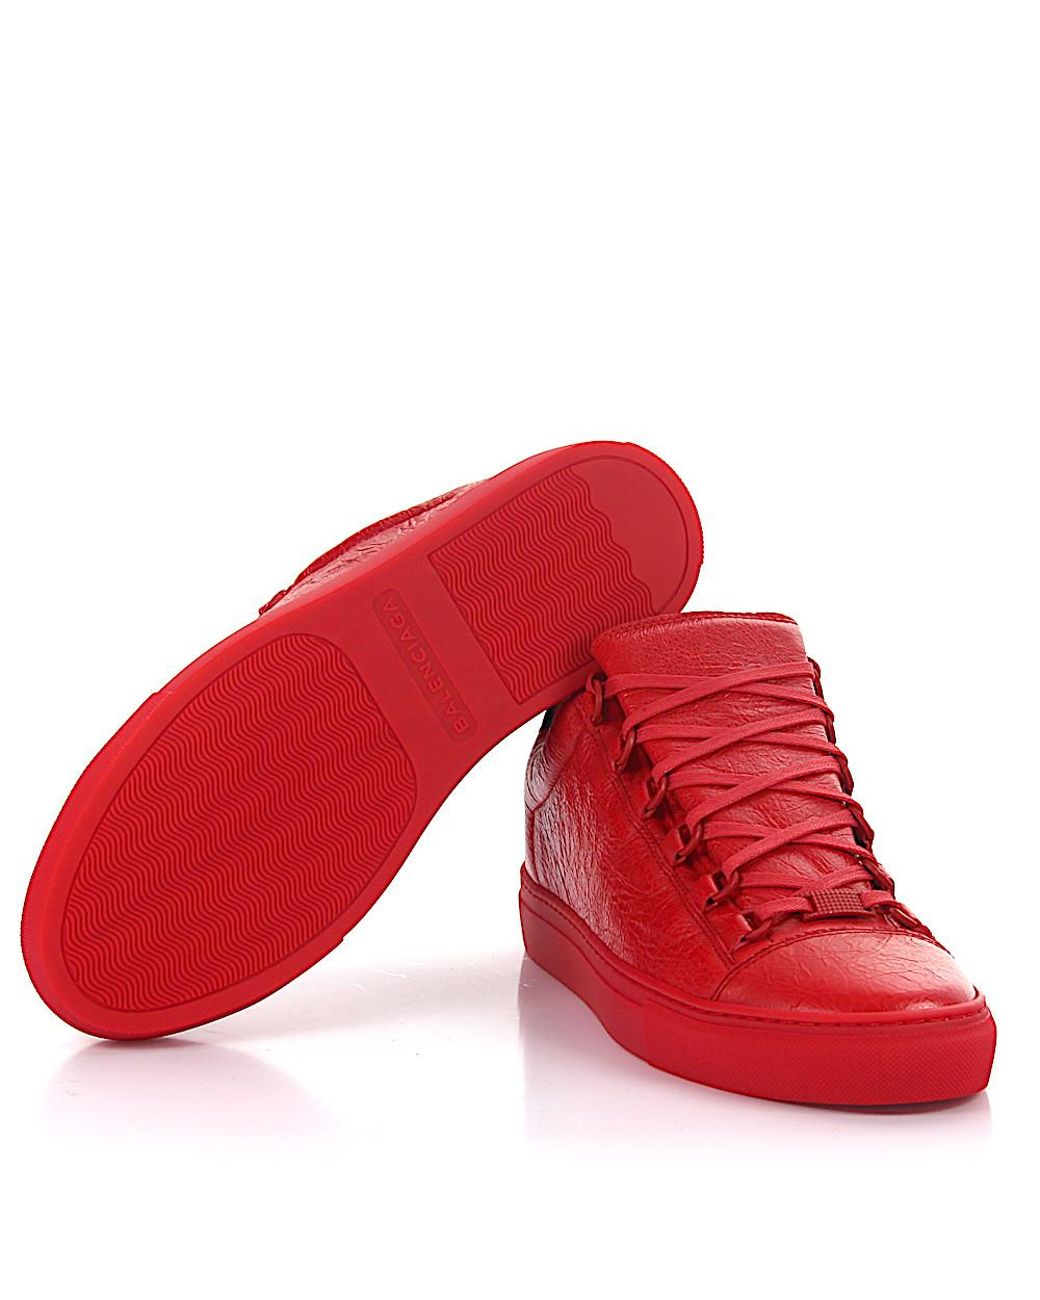 Balenciaga  Shoes  Mens Balenciaga Arena Low Red Sneakers Size 4   Poshmark